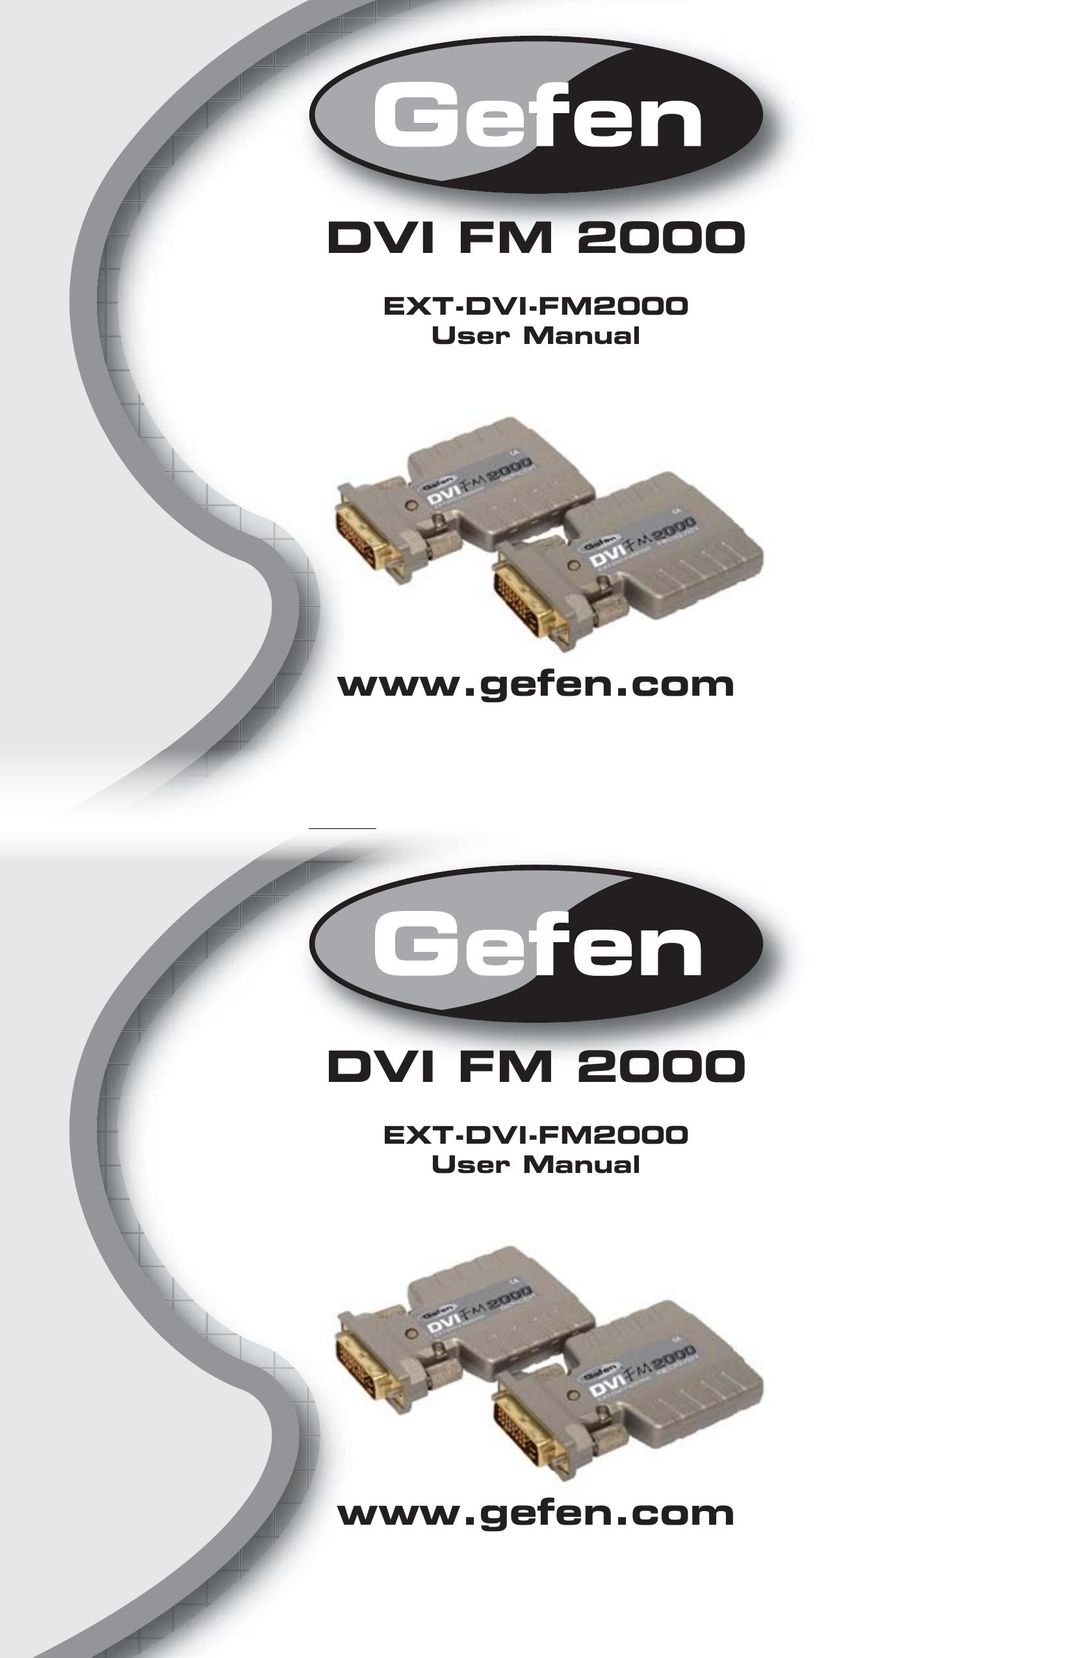 Gefen EXT-DVI-FM2000 TV Cables User Manual